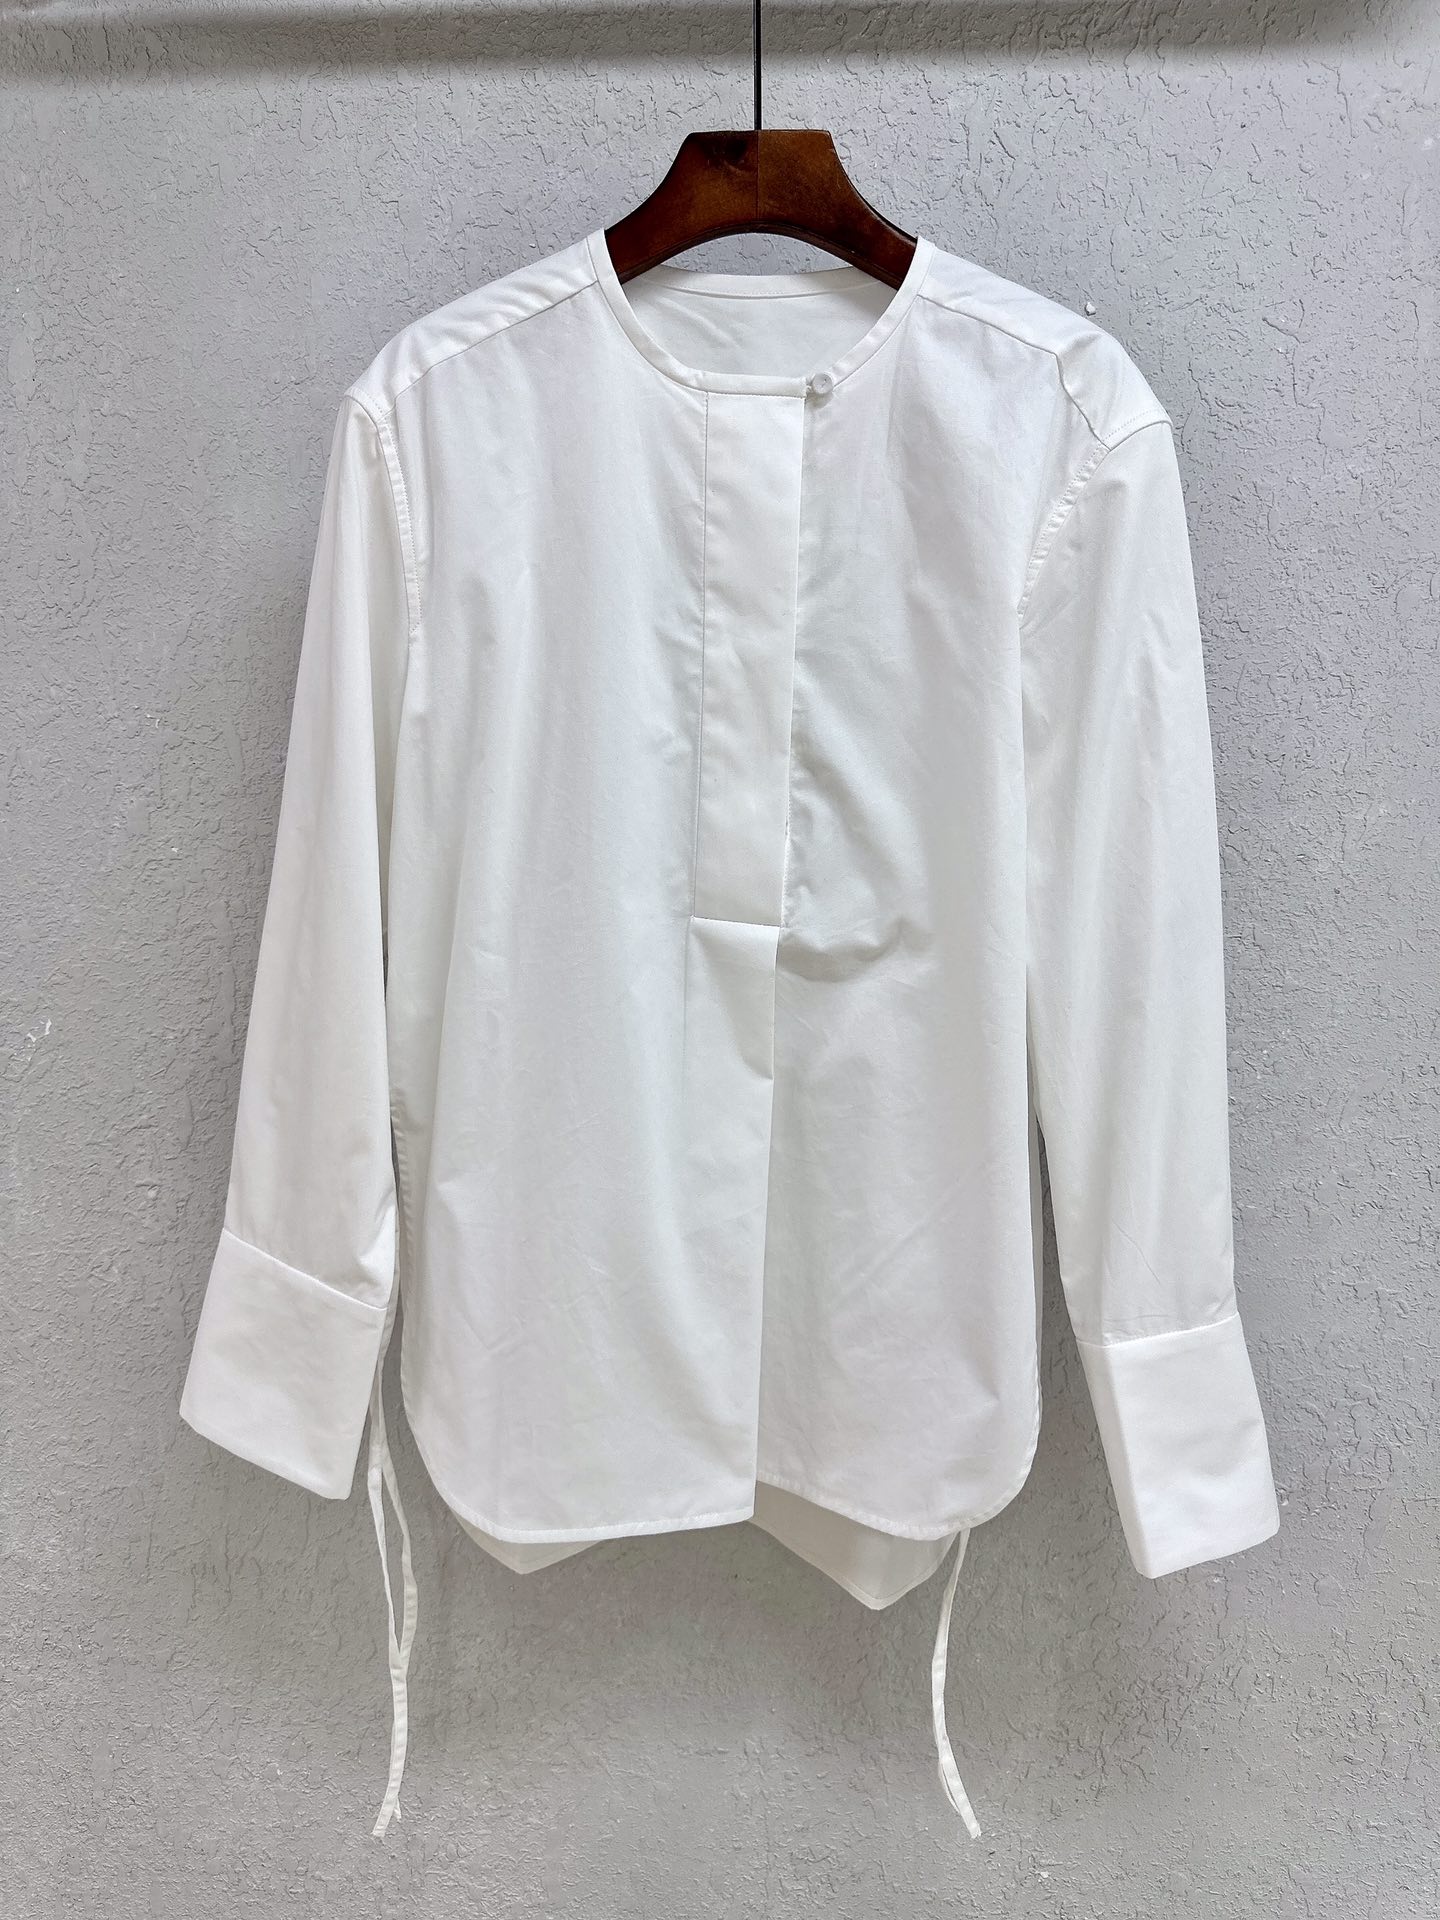 ????????????新中式白衬衫，圆领套头高开衩绑带设计，简约极简带有几分慵懒随性。精纺高支棉，柔软细腻舒适。XS S MPzsdqw（XS胸围104，袖长wbez，衣长qwel）